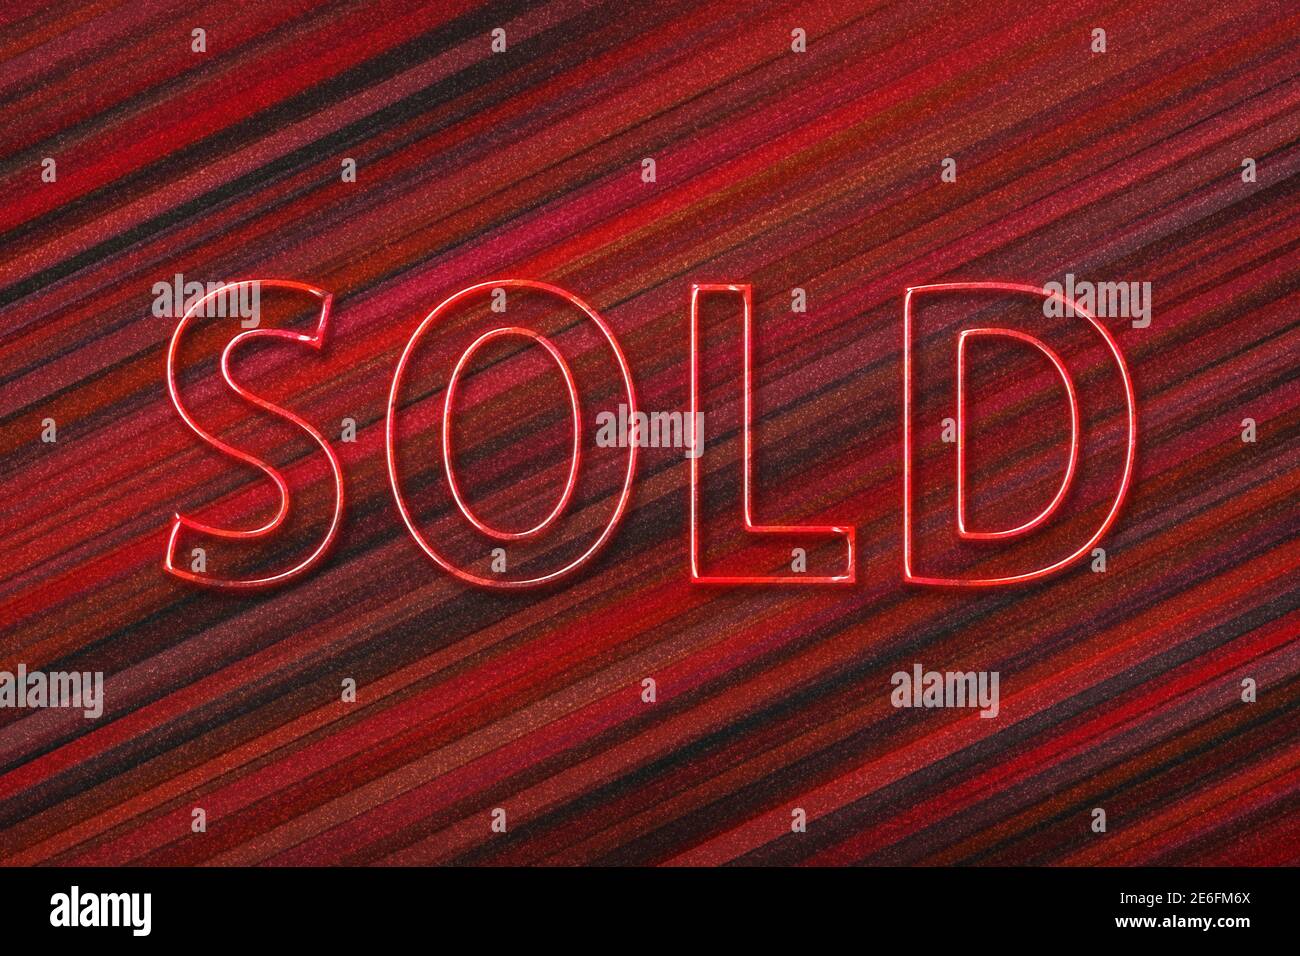 Affiche vendue. Bannière vendue, autocollant vendu, fond rouge Photo Stock  - Alamy